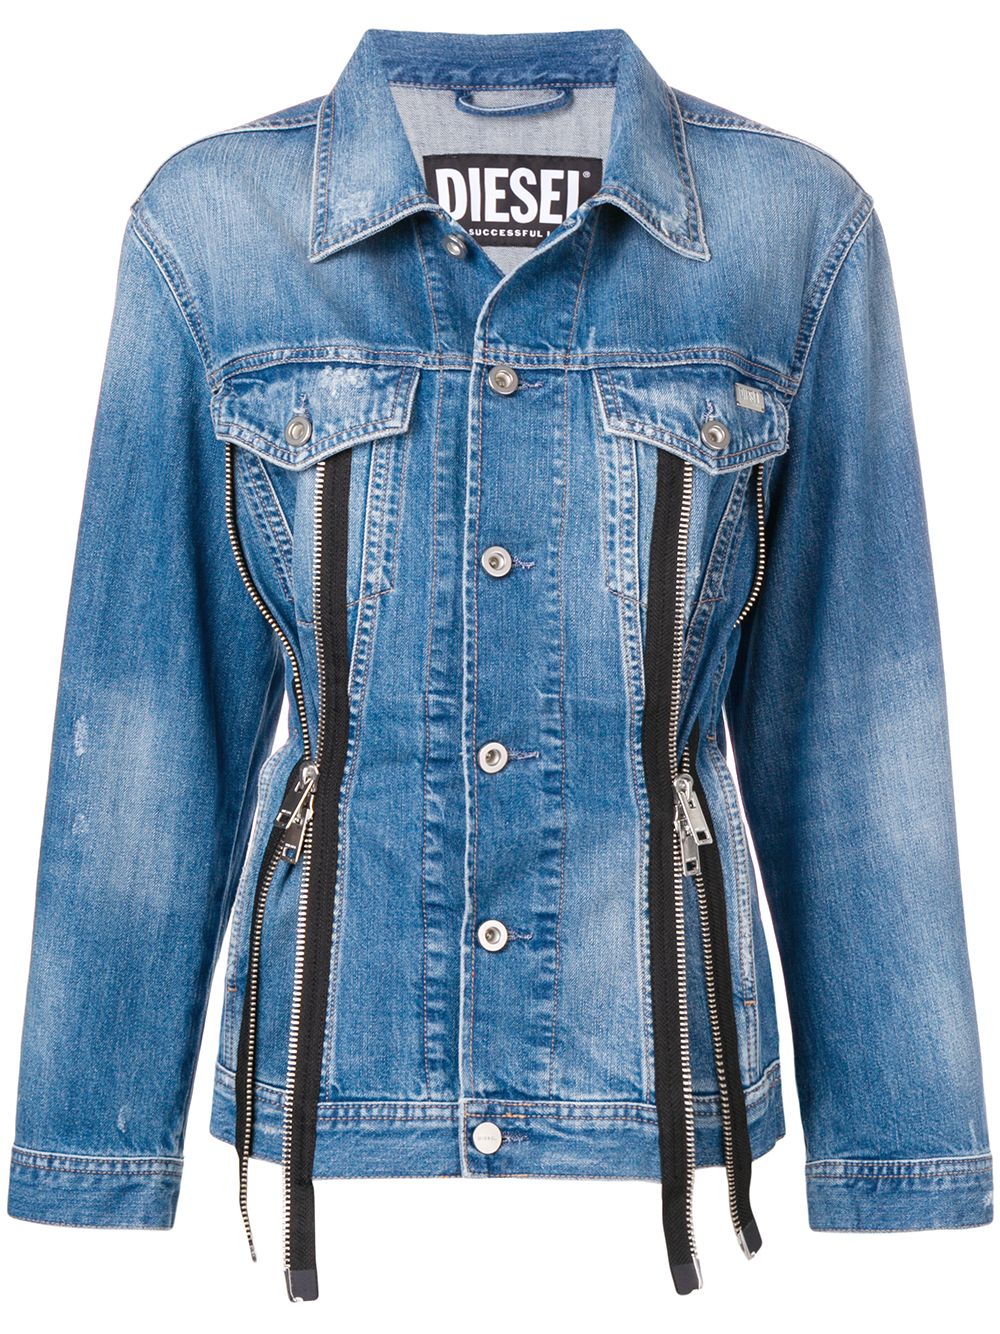 фото Diesel джинсовая куртка на молнии